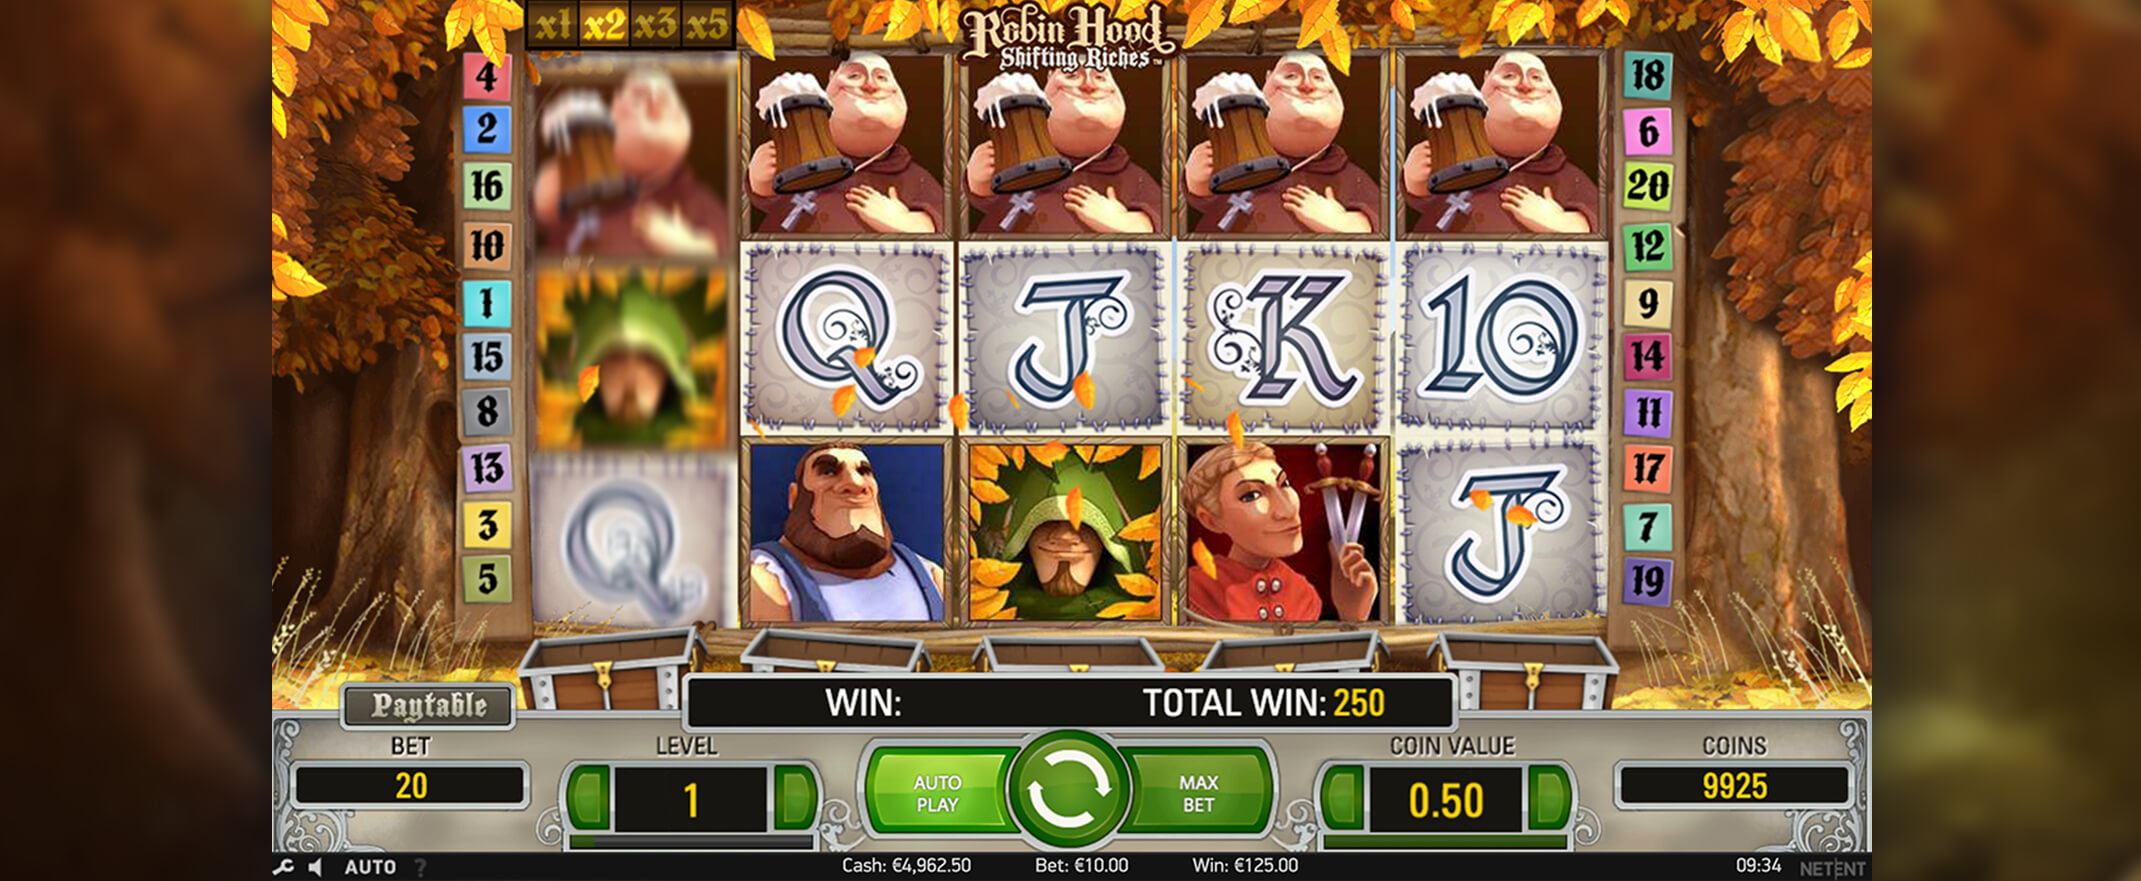 Robin Hood: Shifting Riches ist ein Online-Casino-Slot-Spiel, das auf dem berÃ¼hmten Robin-Hood-Thema basiert. Screenshot